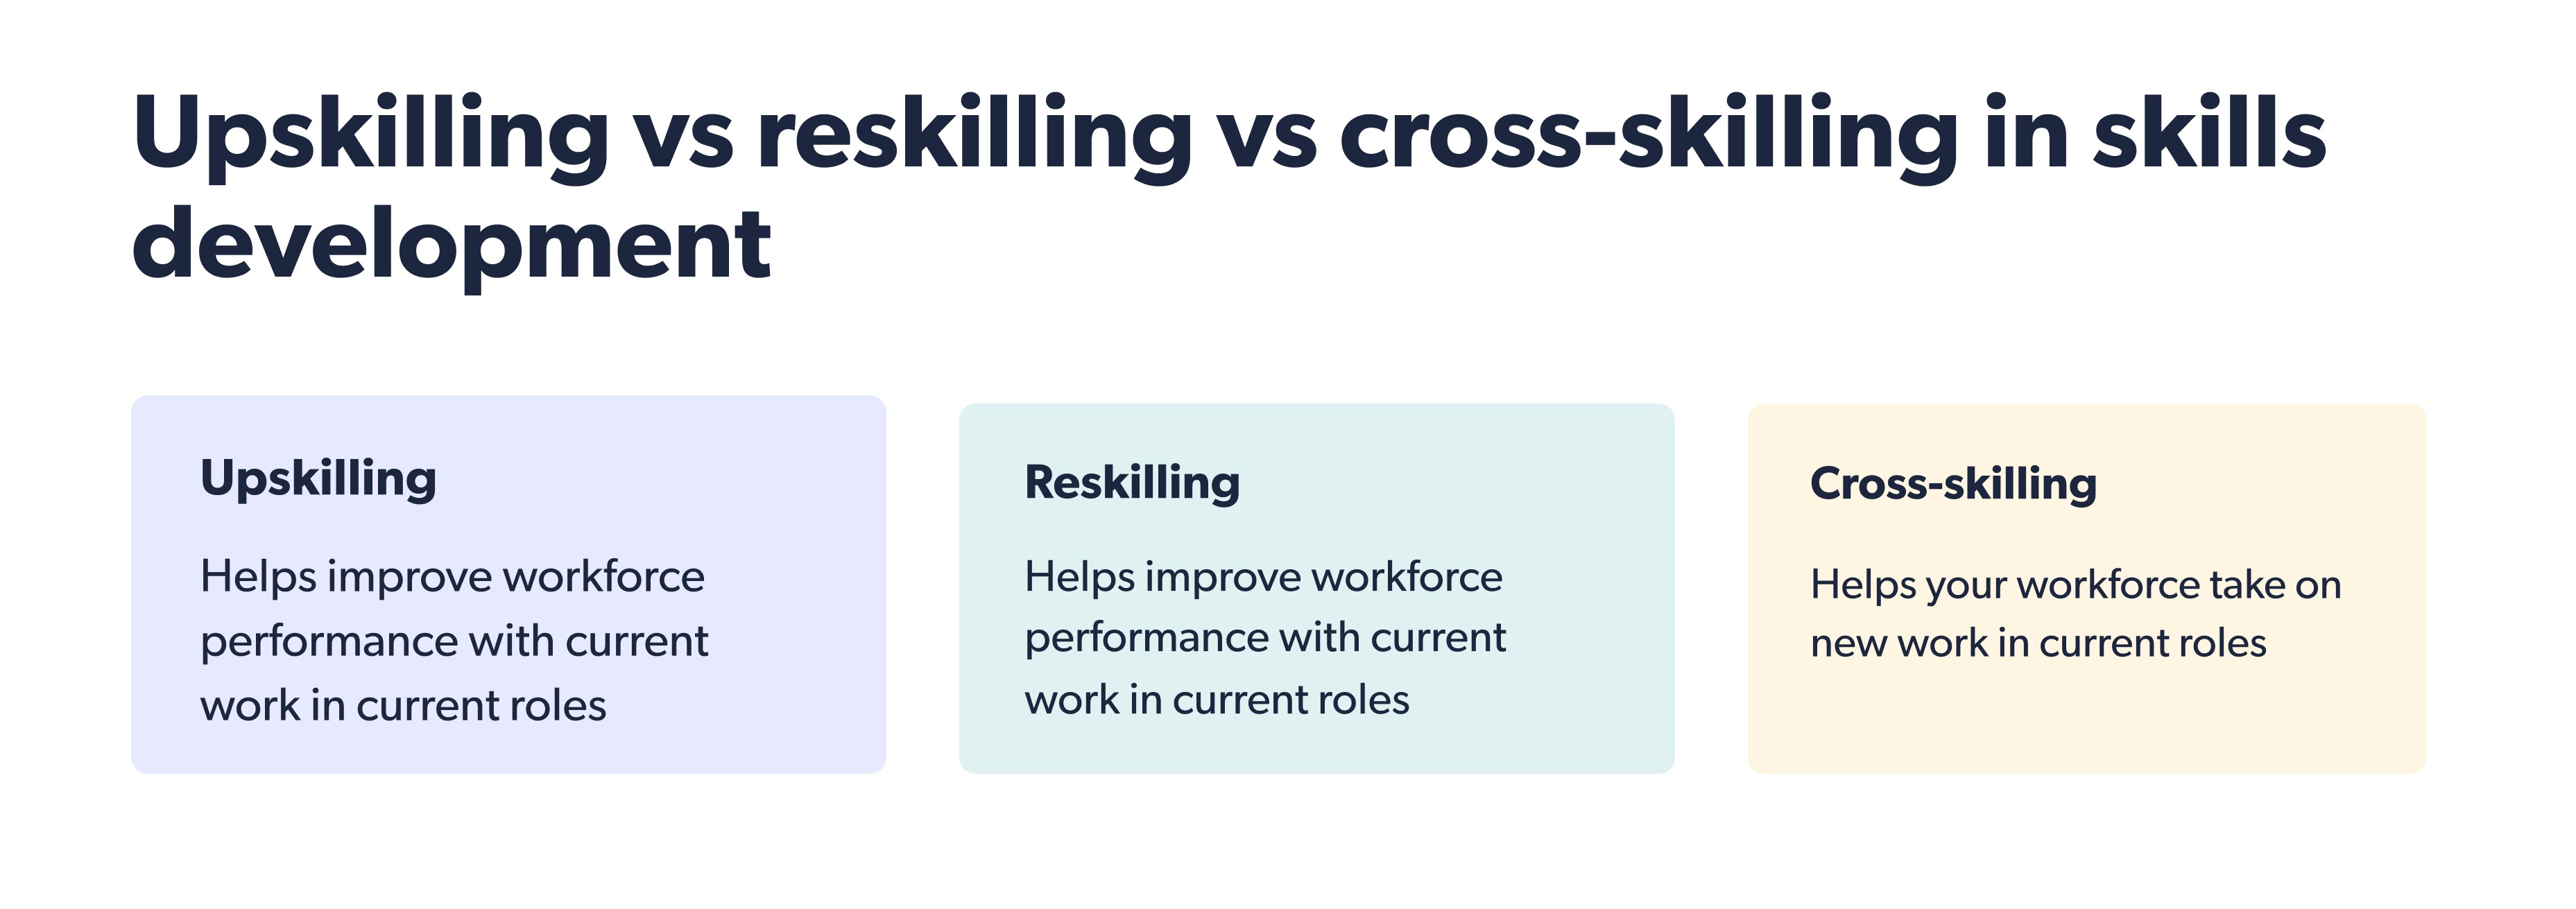 Upskilling vs reskilling vs cross-skilling in skills development